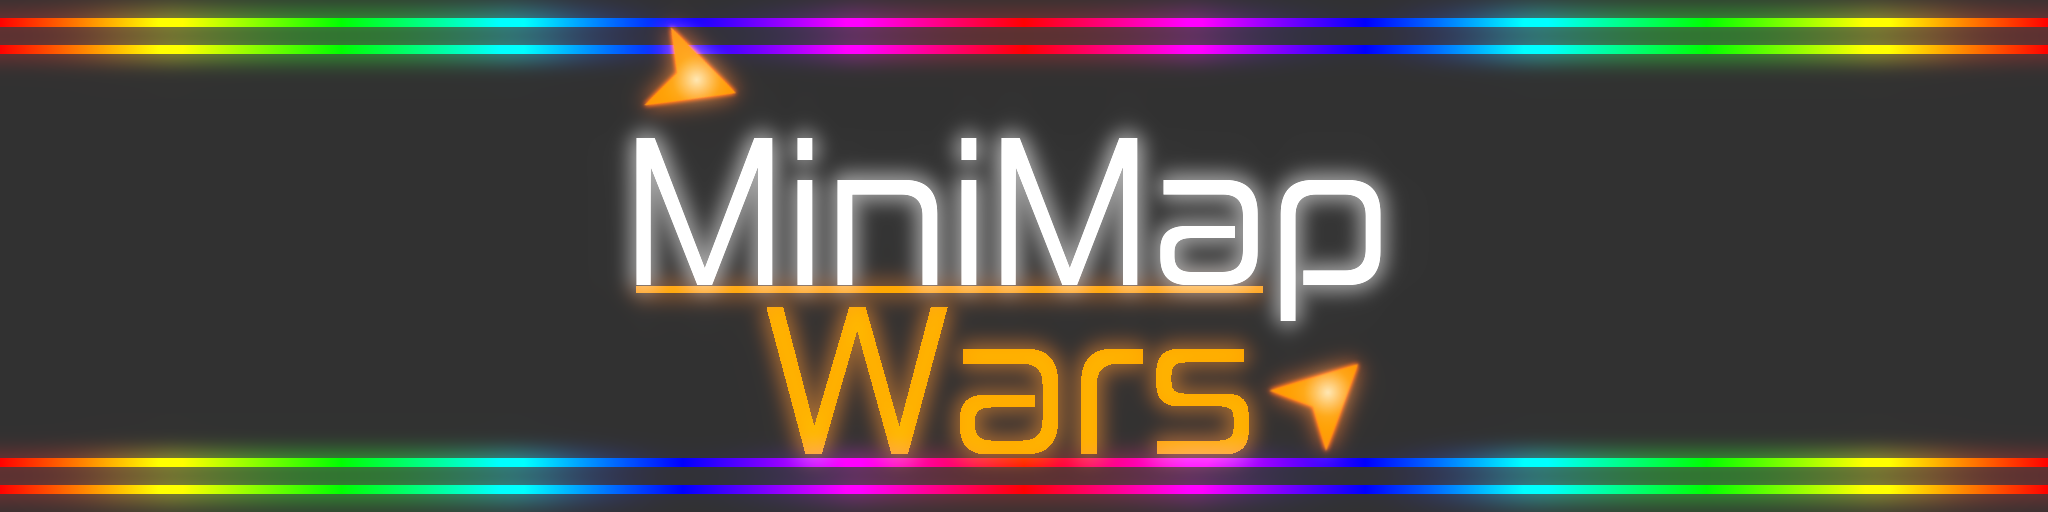 Mini Map Wars